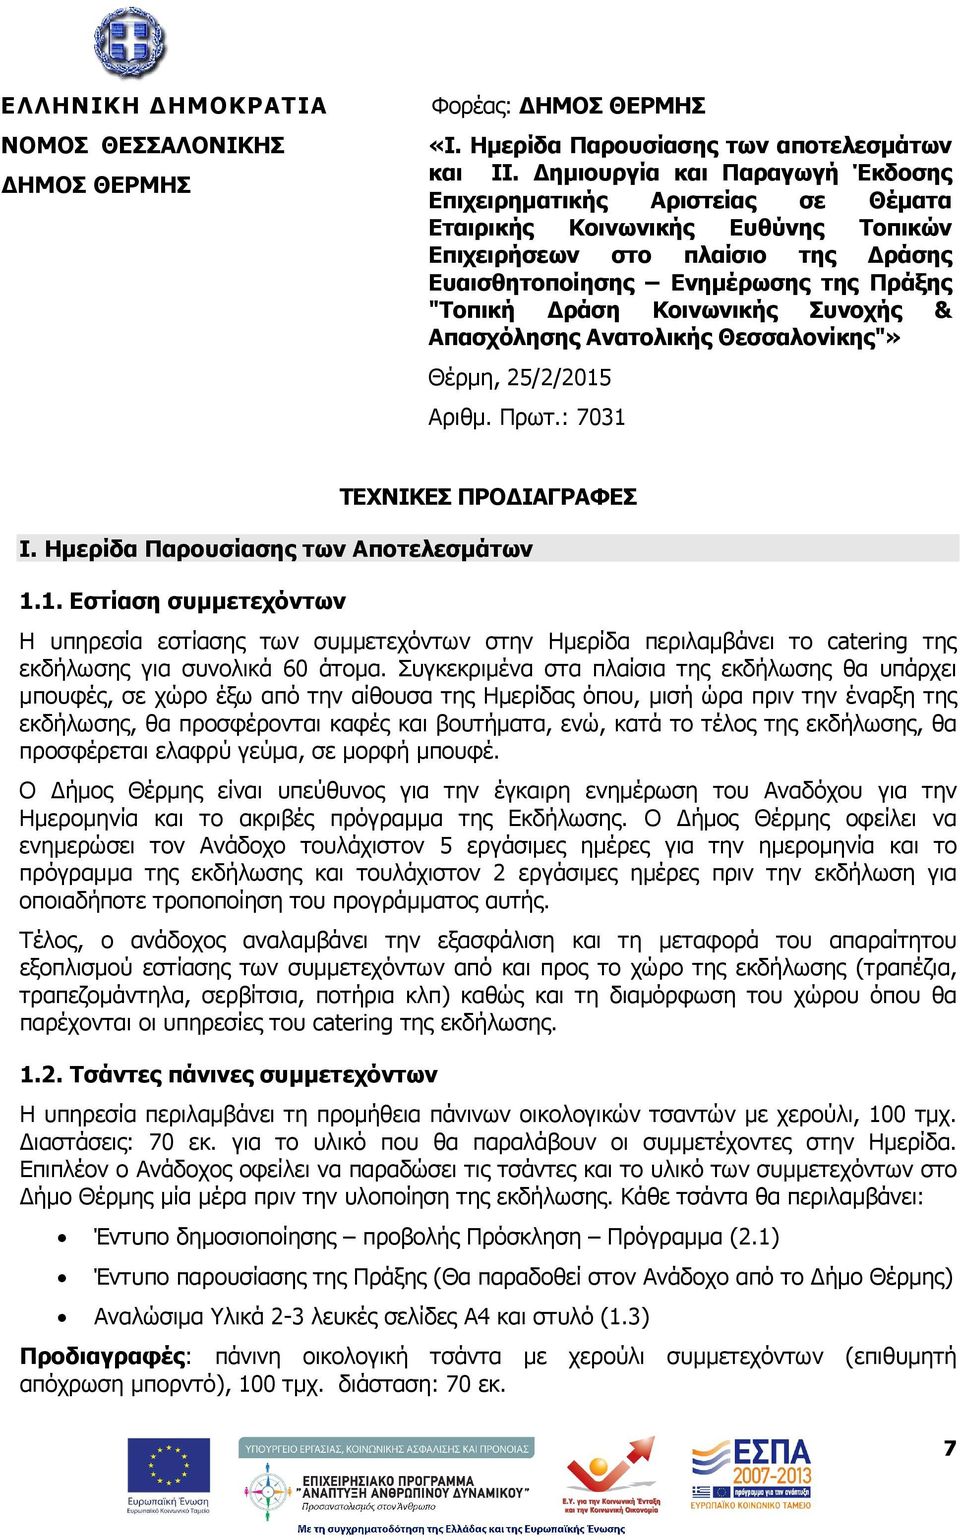 Κοινωνικής Συνοχής & Απασχόλησης Ανατολικής Θεσσαλονίκης"» Αριθµ. Πρωτ.: 7031 